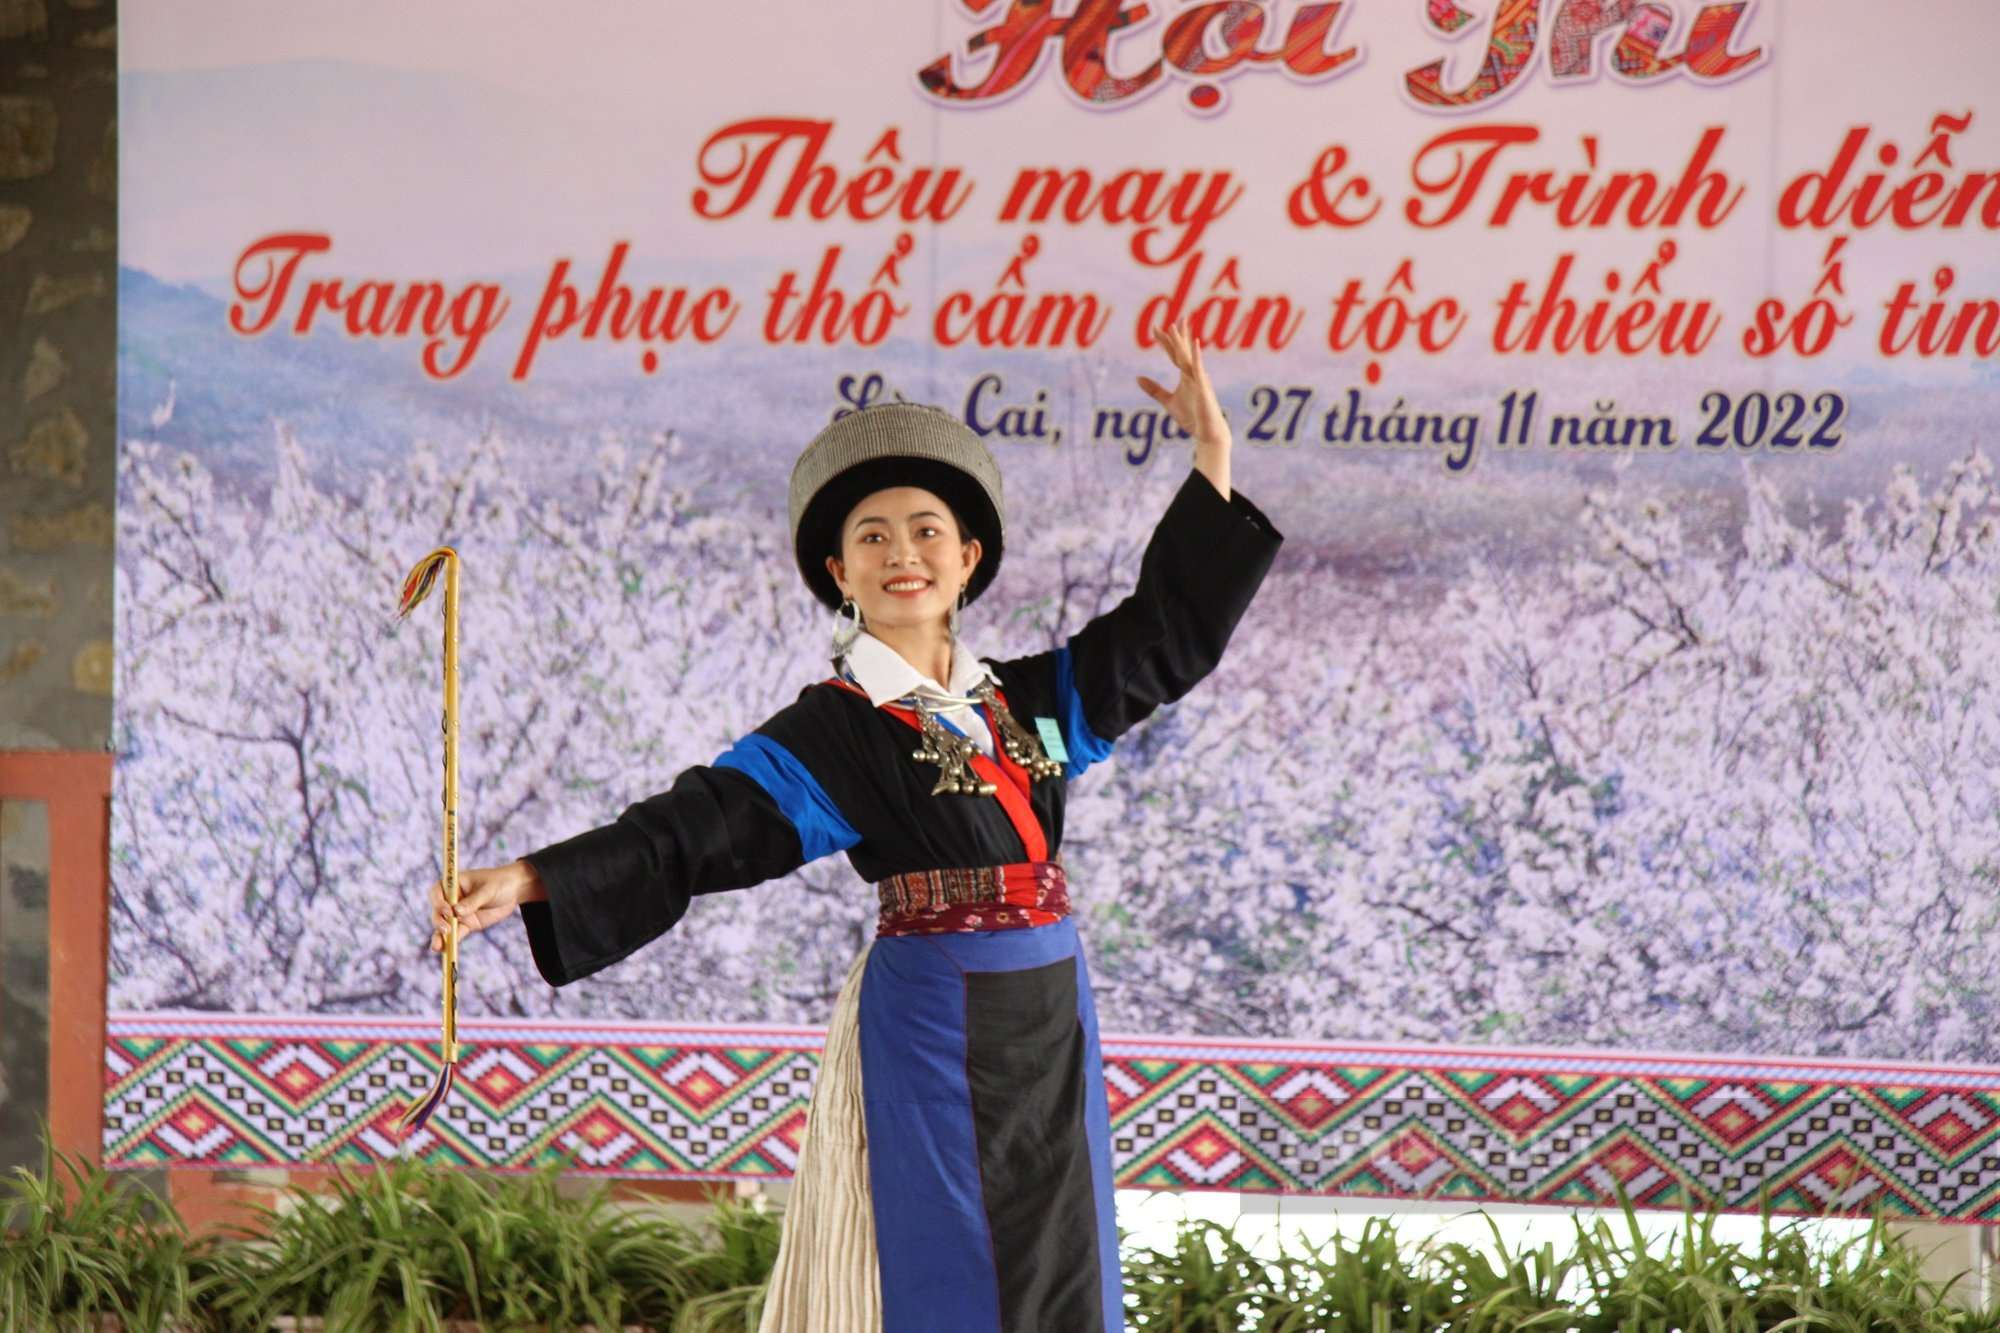 Rực rỡ trang phục thổ cẩm dân tộc thiểu số tỉnh Lào Cai trong Hội thi tay nghề thêu may và trình diễn - Ảnh 12.